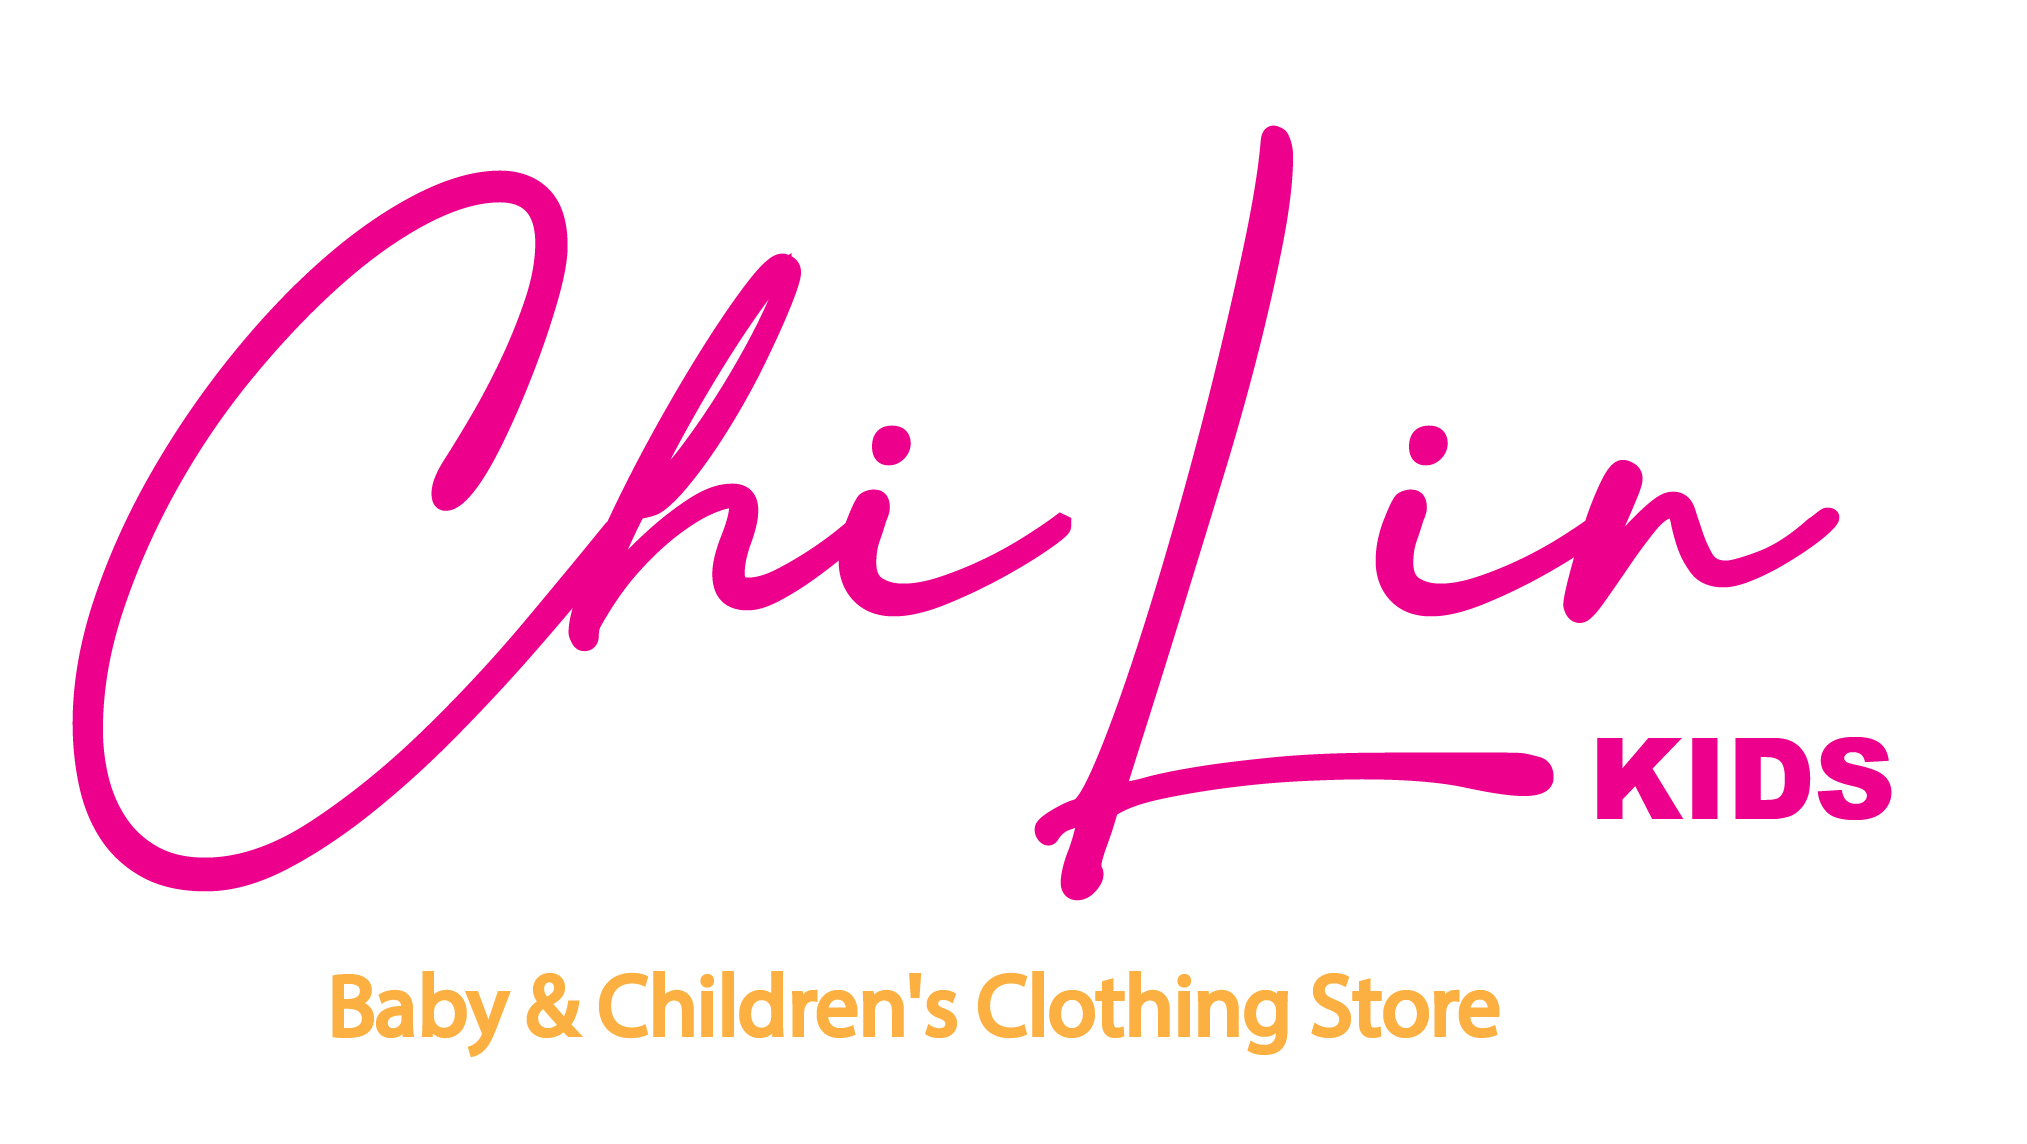 ChiLin Kids - Baby & Children's Clothing Store